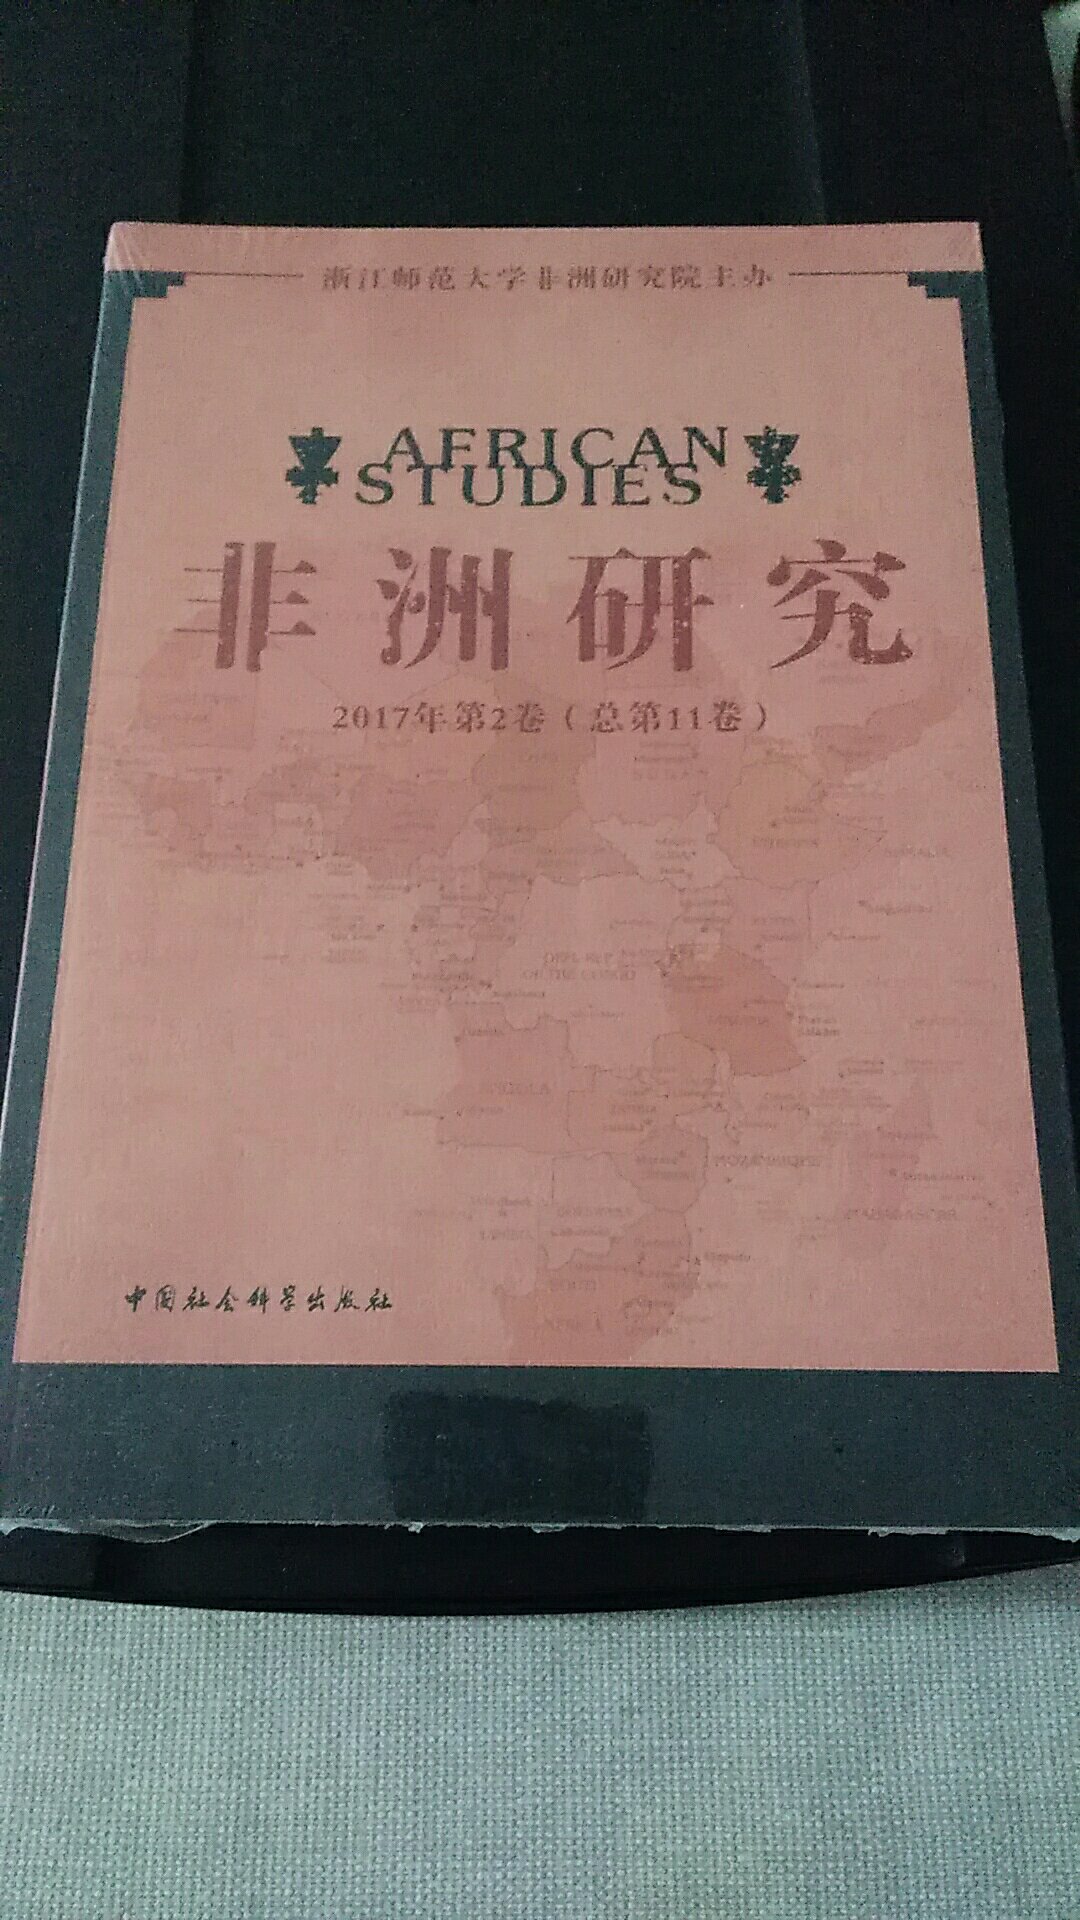 这套书对非洲的研究非常深刻。